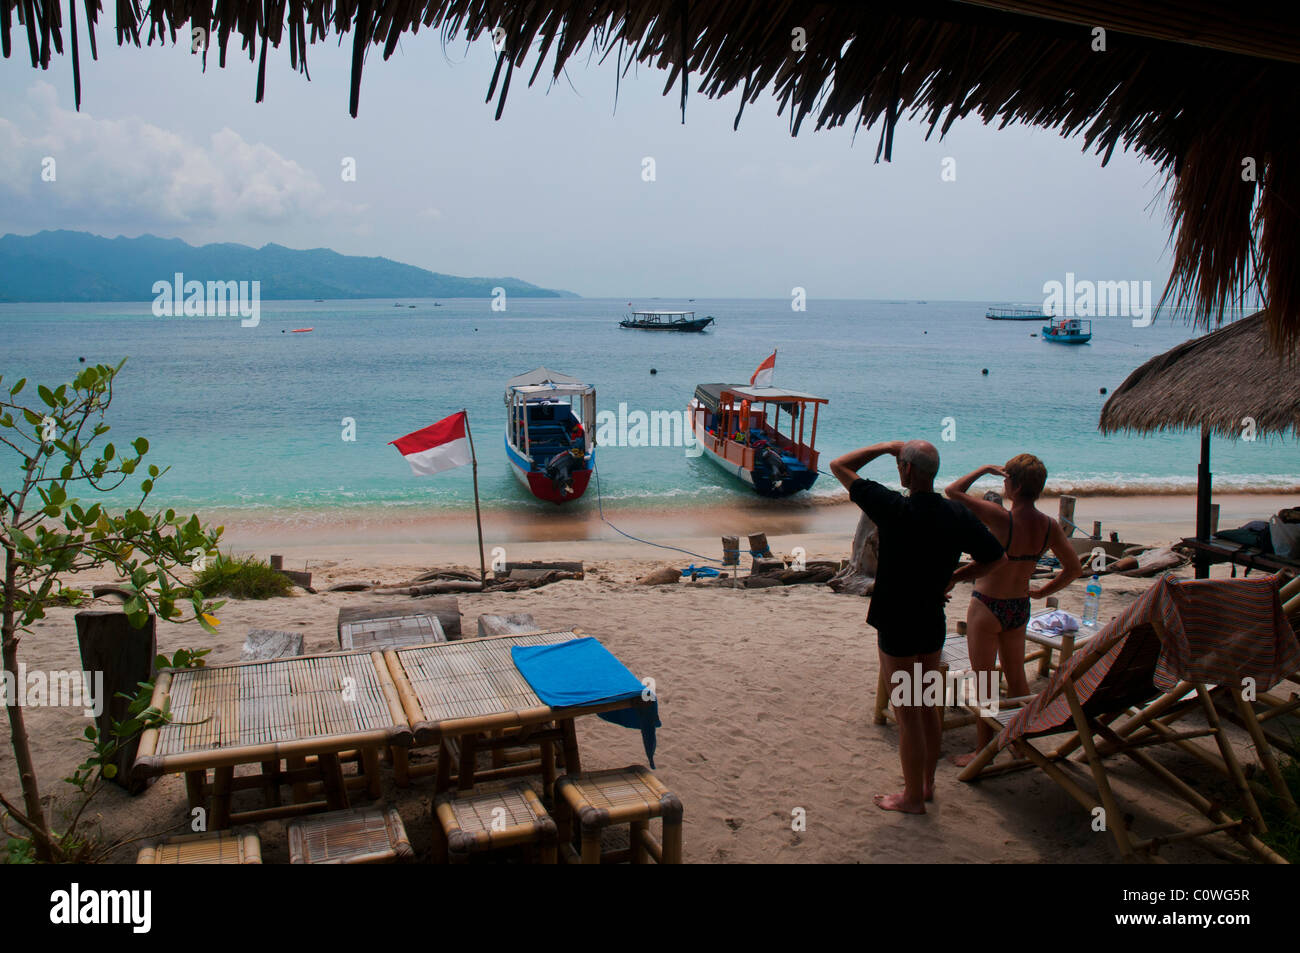 La petite plage de Gili Air la plus petite île du groupe d'îles Gili au large de Lombok Indonésie Banque D'Images